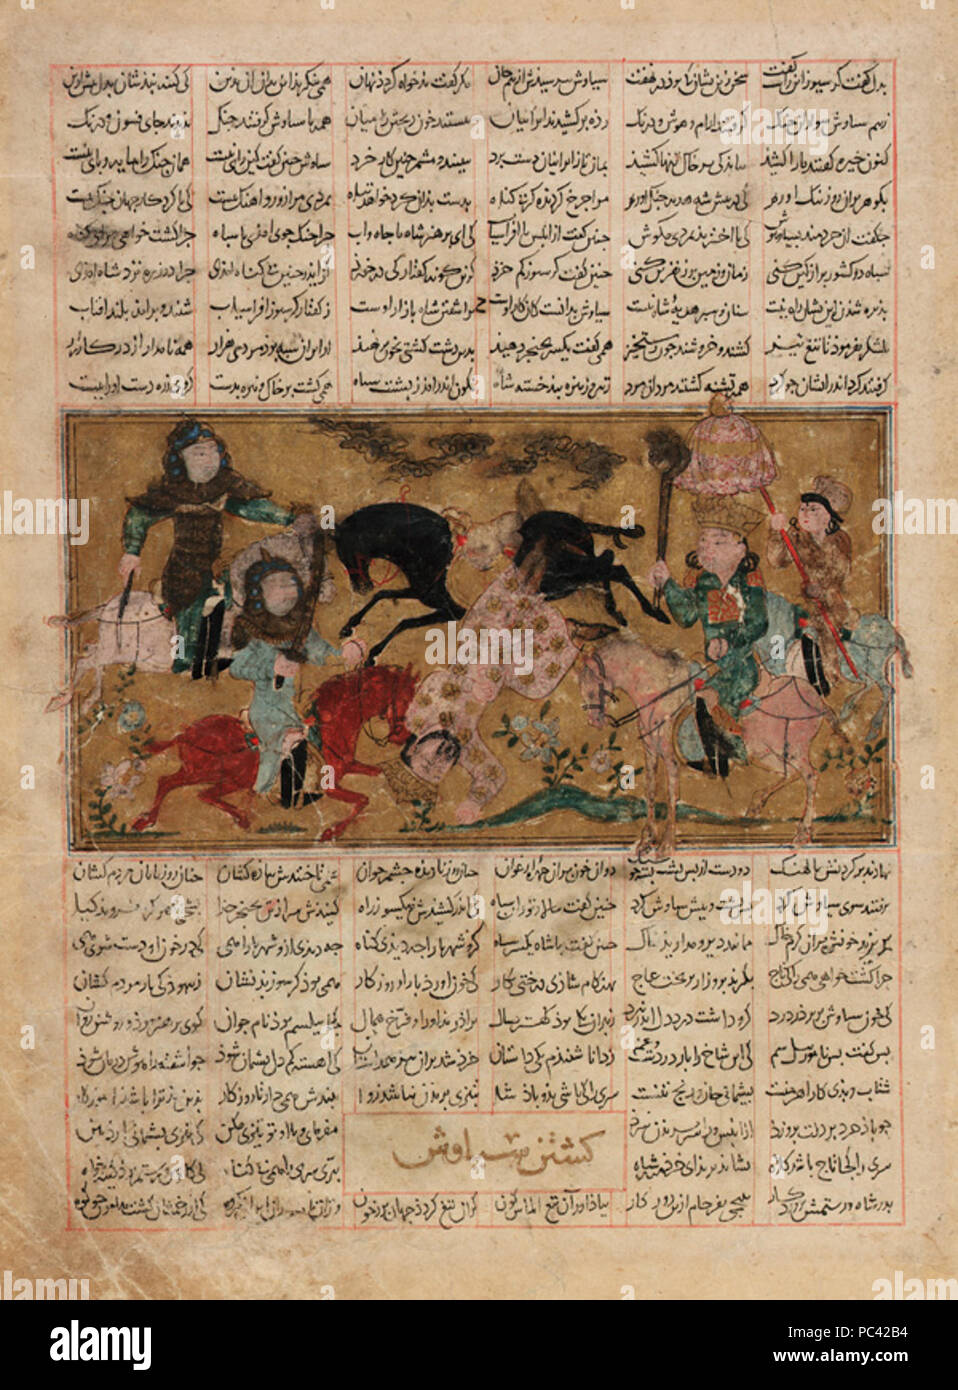 554 Shahnameh - Siyawash taken in battle by Afrasiyab Stock Photo